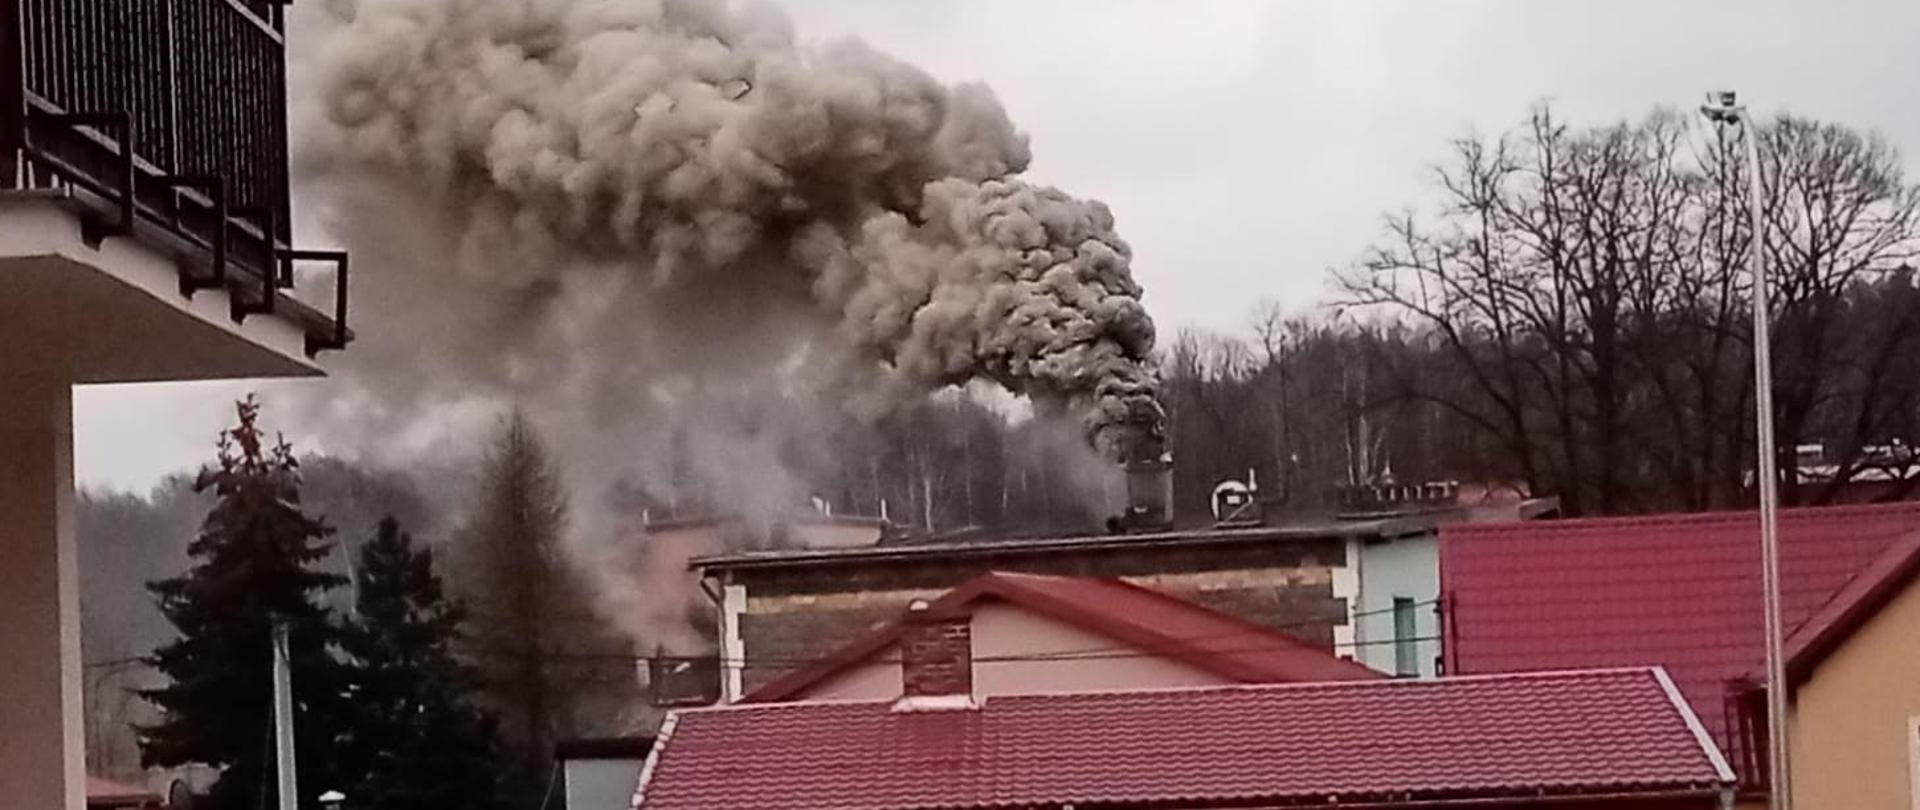 Na zdjęciu widać budynek koloru różowego. Nad budynkiem widać wydobywający się dym z komina. Dym jest gęsty i jest koloru biało szarego. Dym wydobywa się z komina. Dach budynku jest czerwony. 